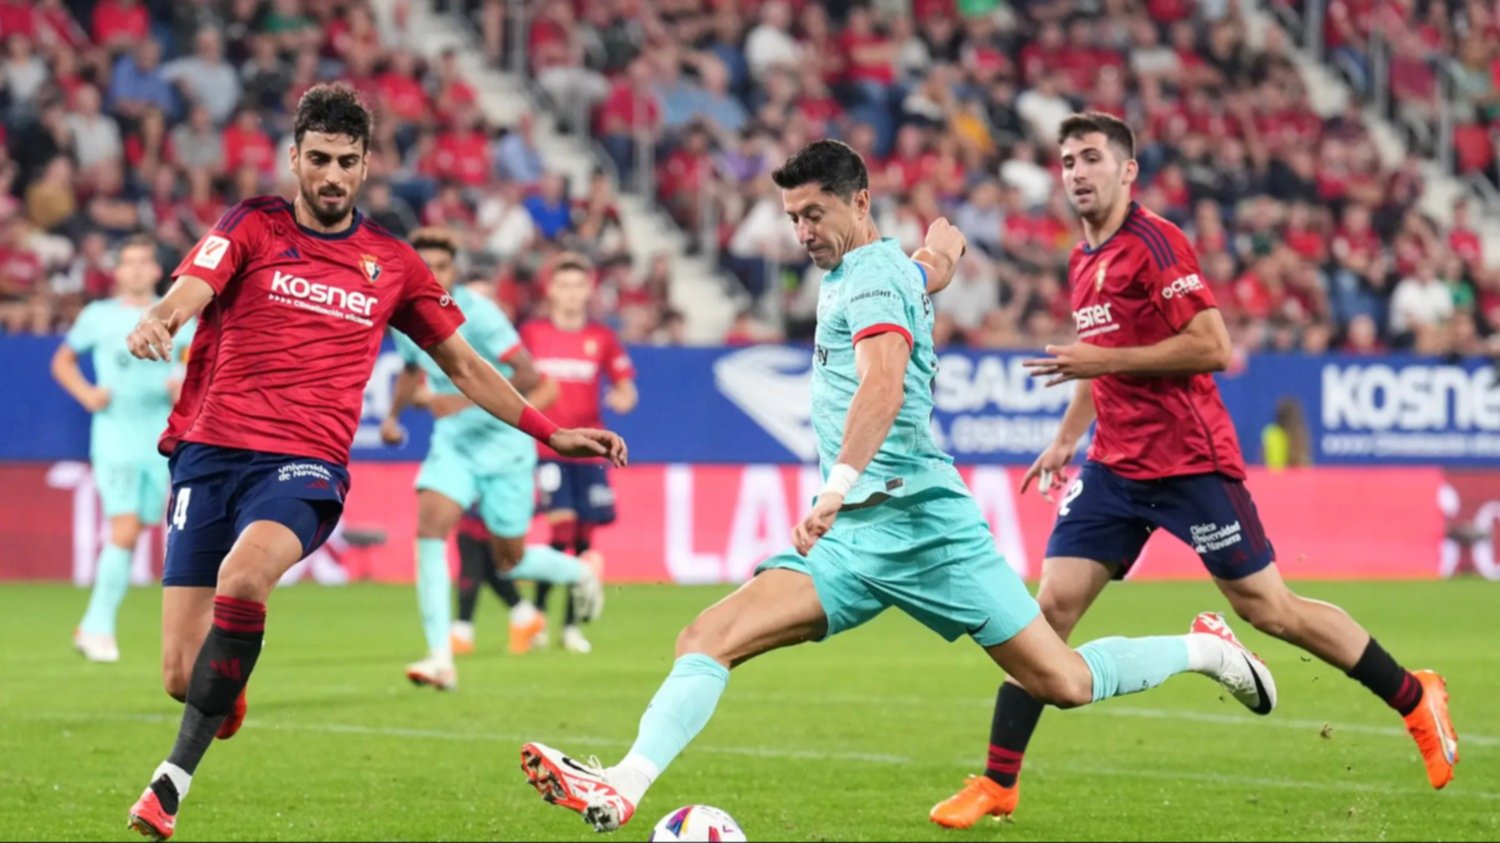 El nuevo balón 'Amberes' con el que Osasuna y Real Madrid jugarán la final  de Copa